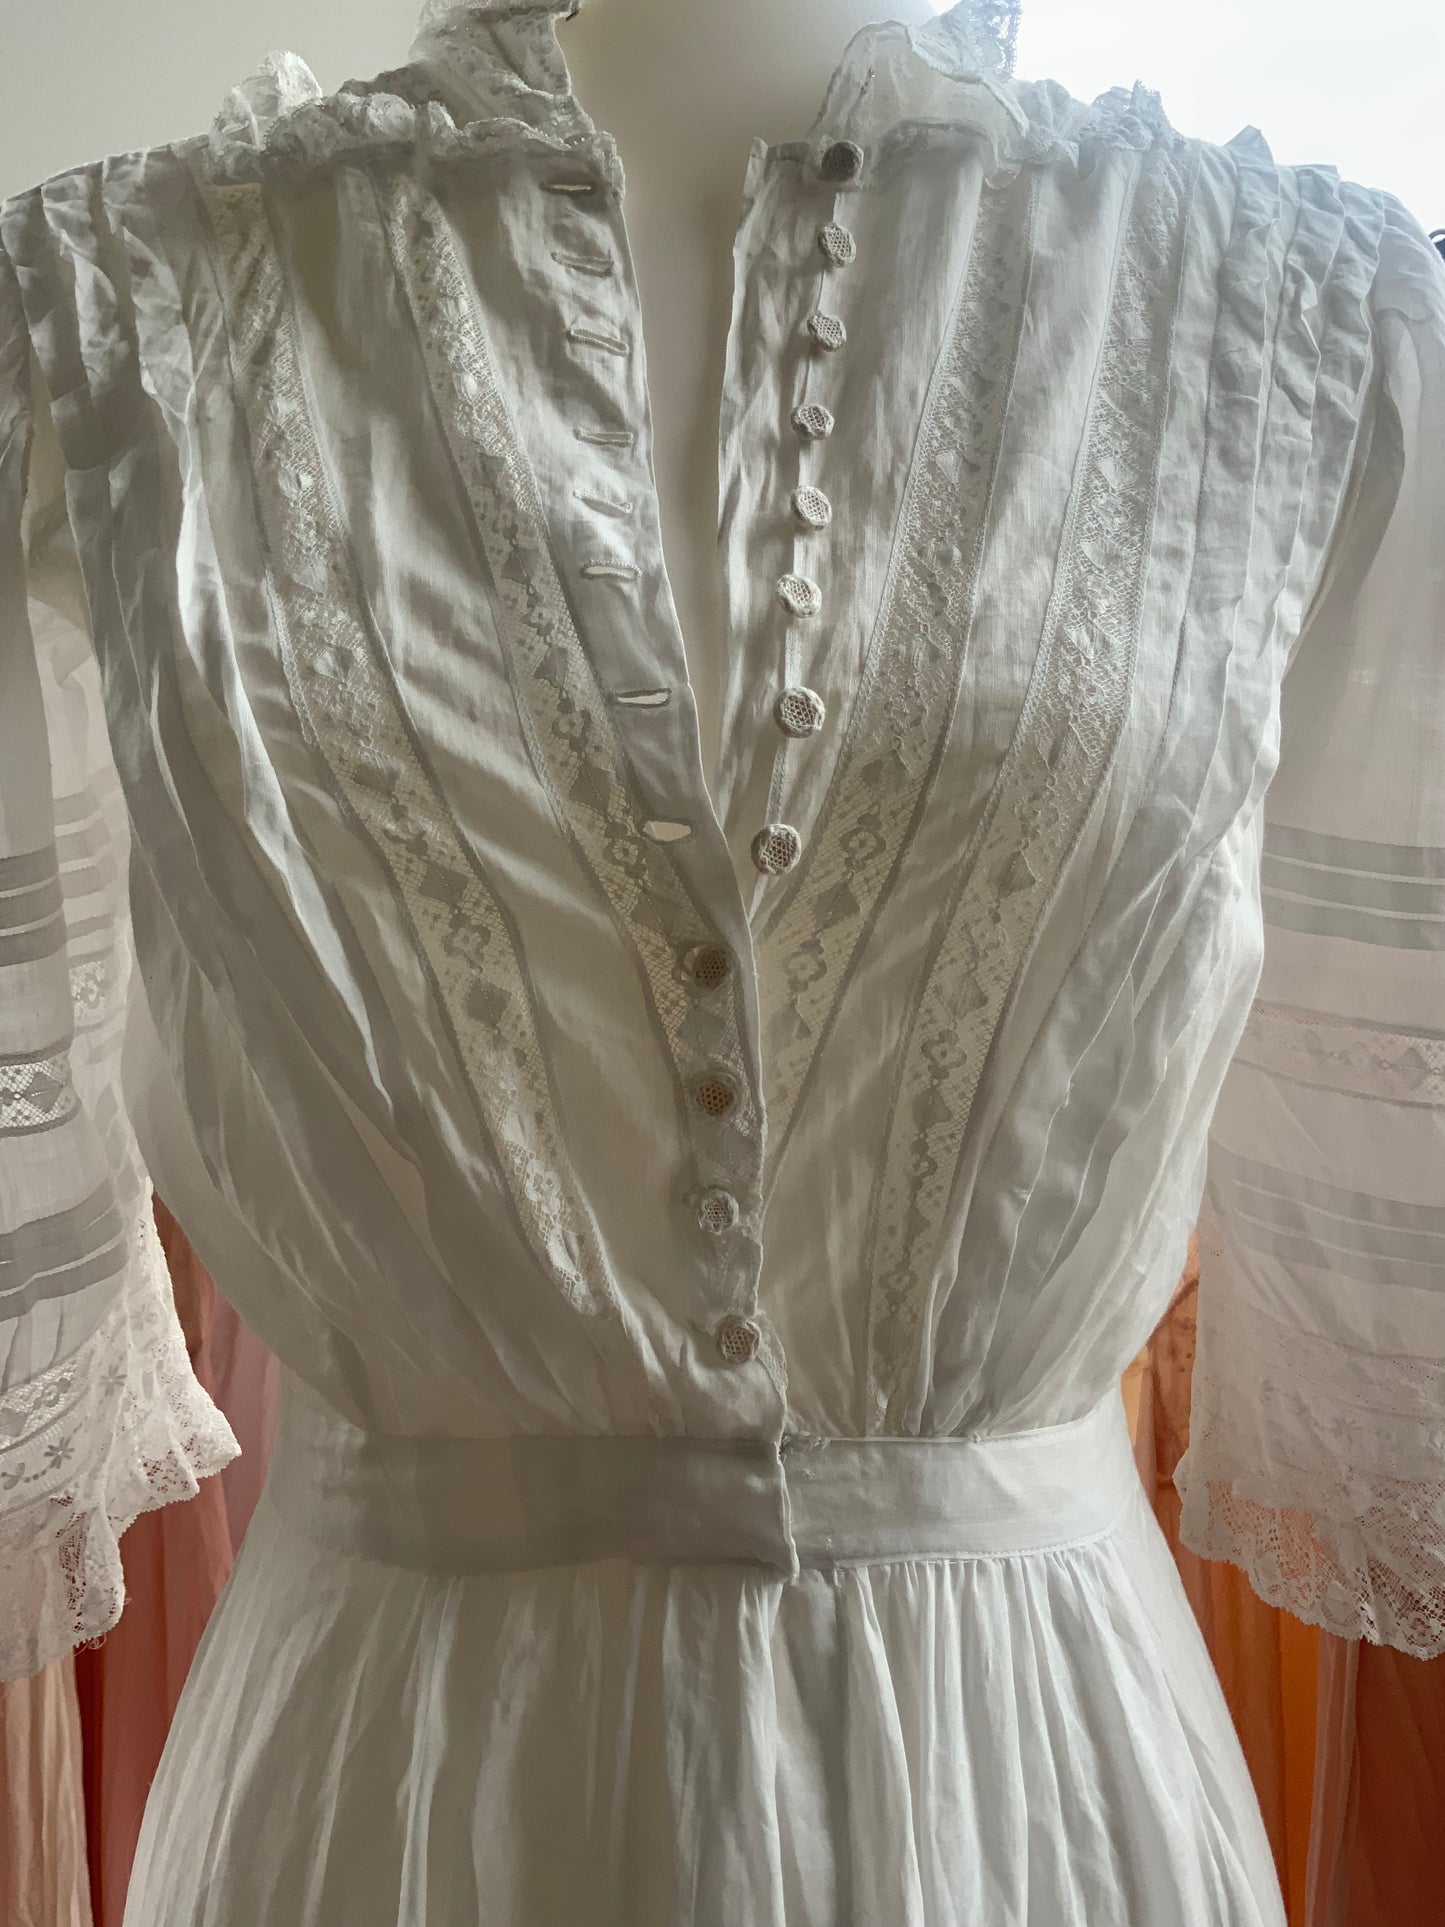 Edwardian Lawn Dress - 1919 - Bridal